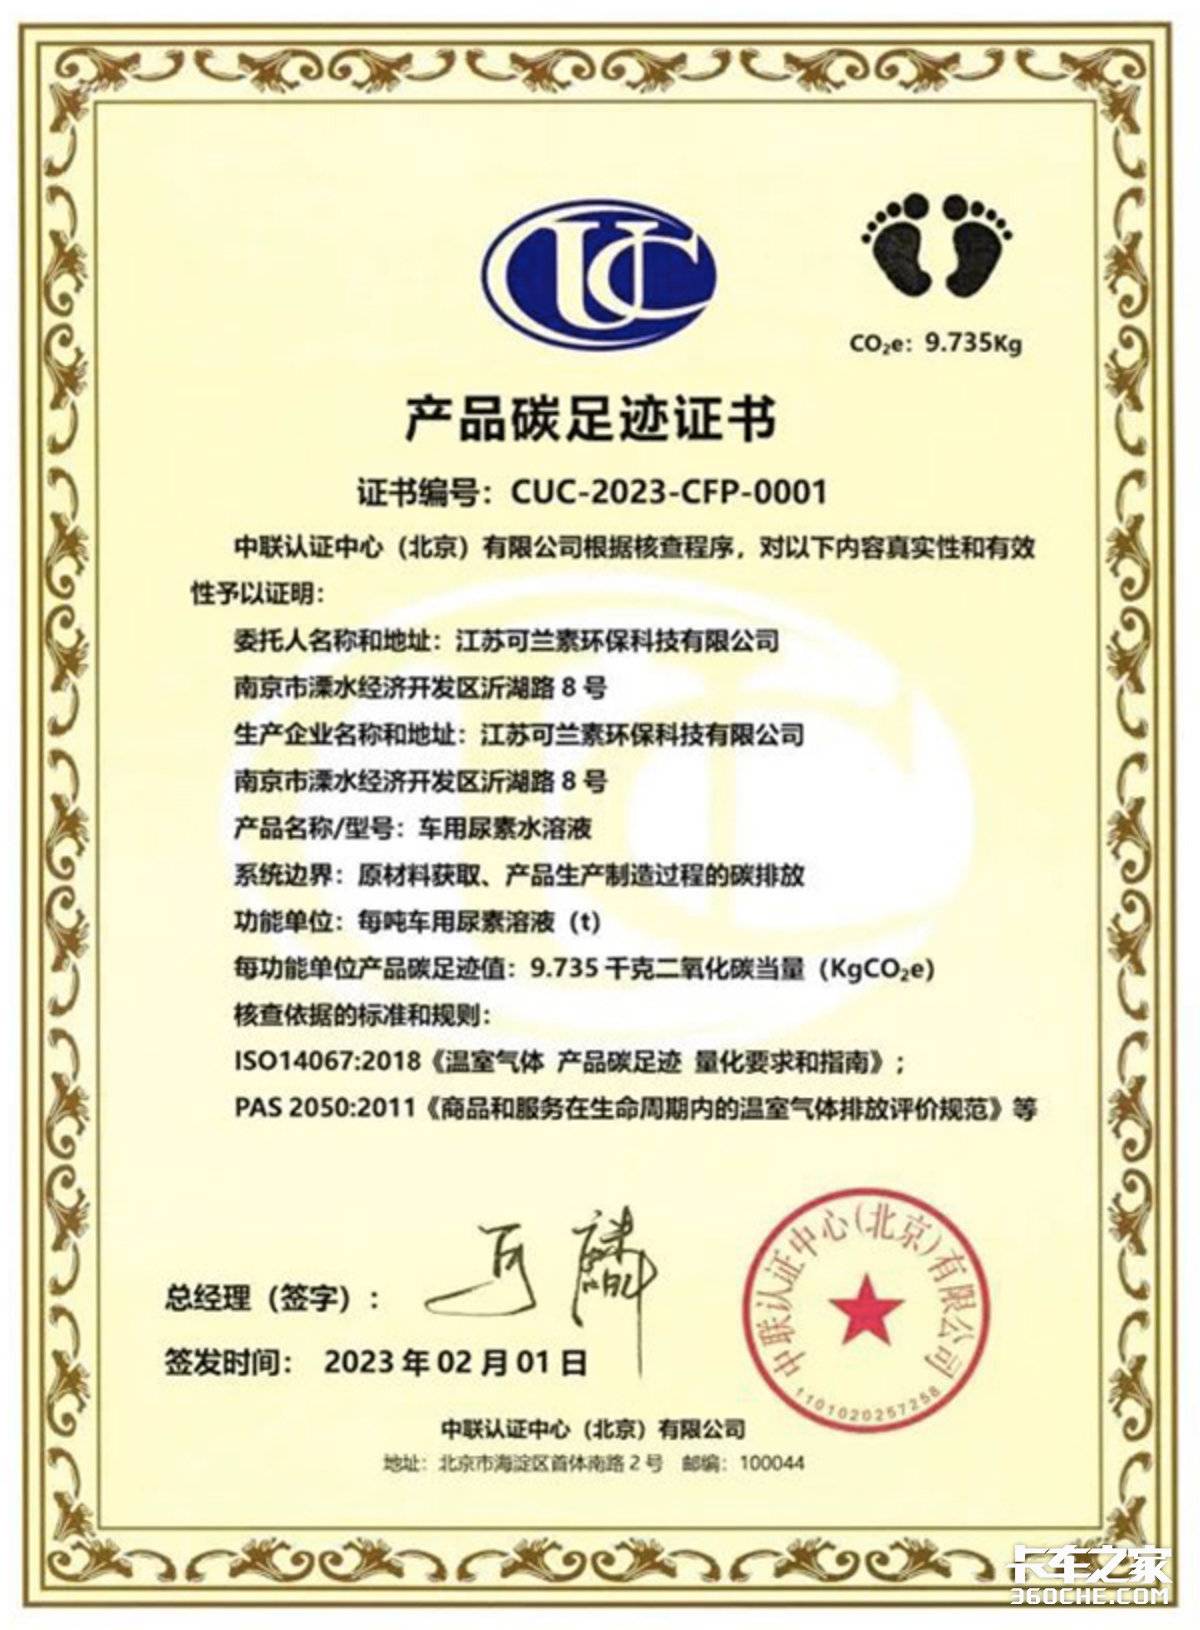 可兰素荣获中联认证颁发产品碳足迹证书